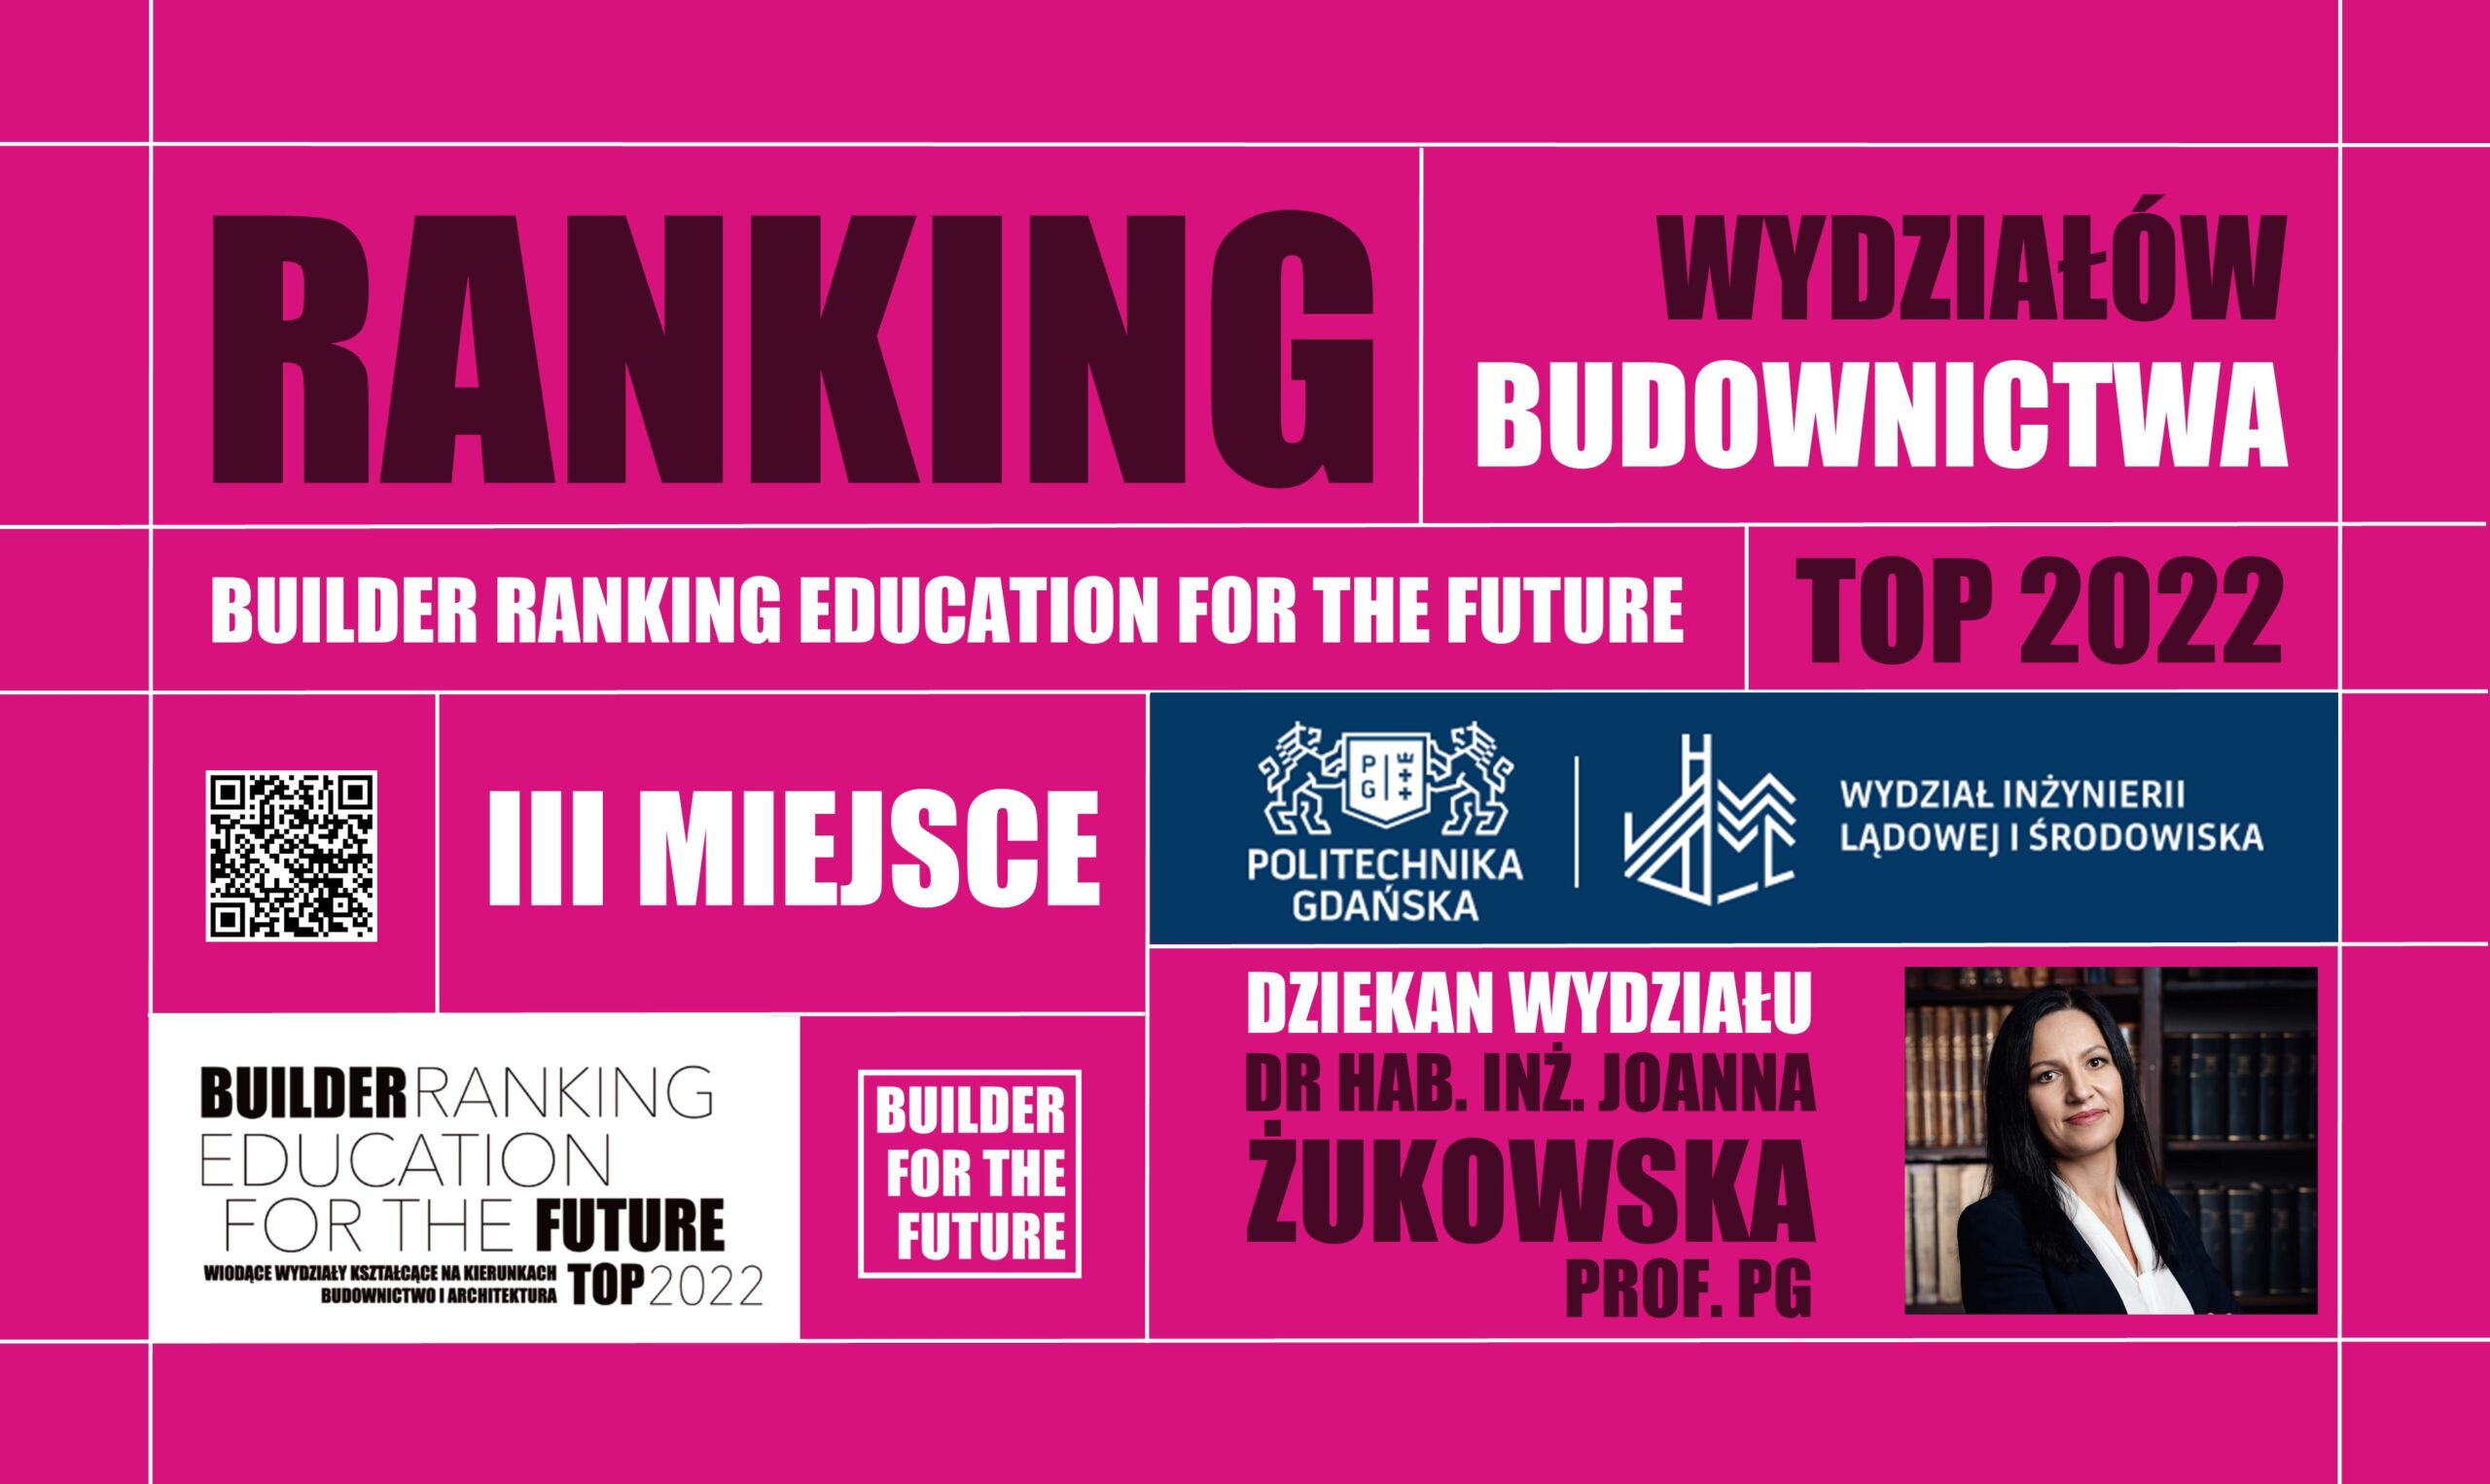 III MIEJSCE W RANKINGU WYDZIAŁÓW BUDOWNICTWA – BUILDER RANKING EDUCATION FOR THE FUTURE TOP 2022